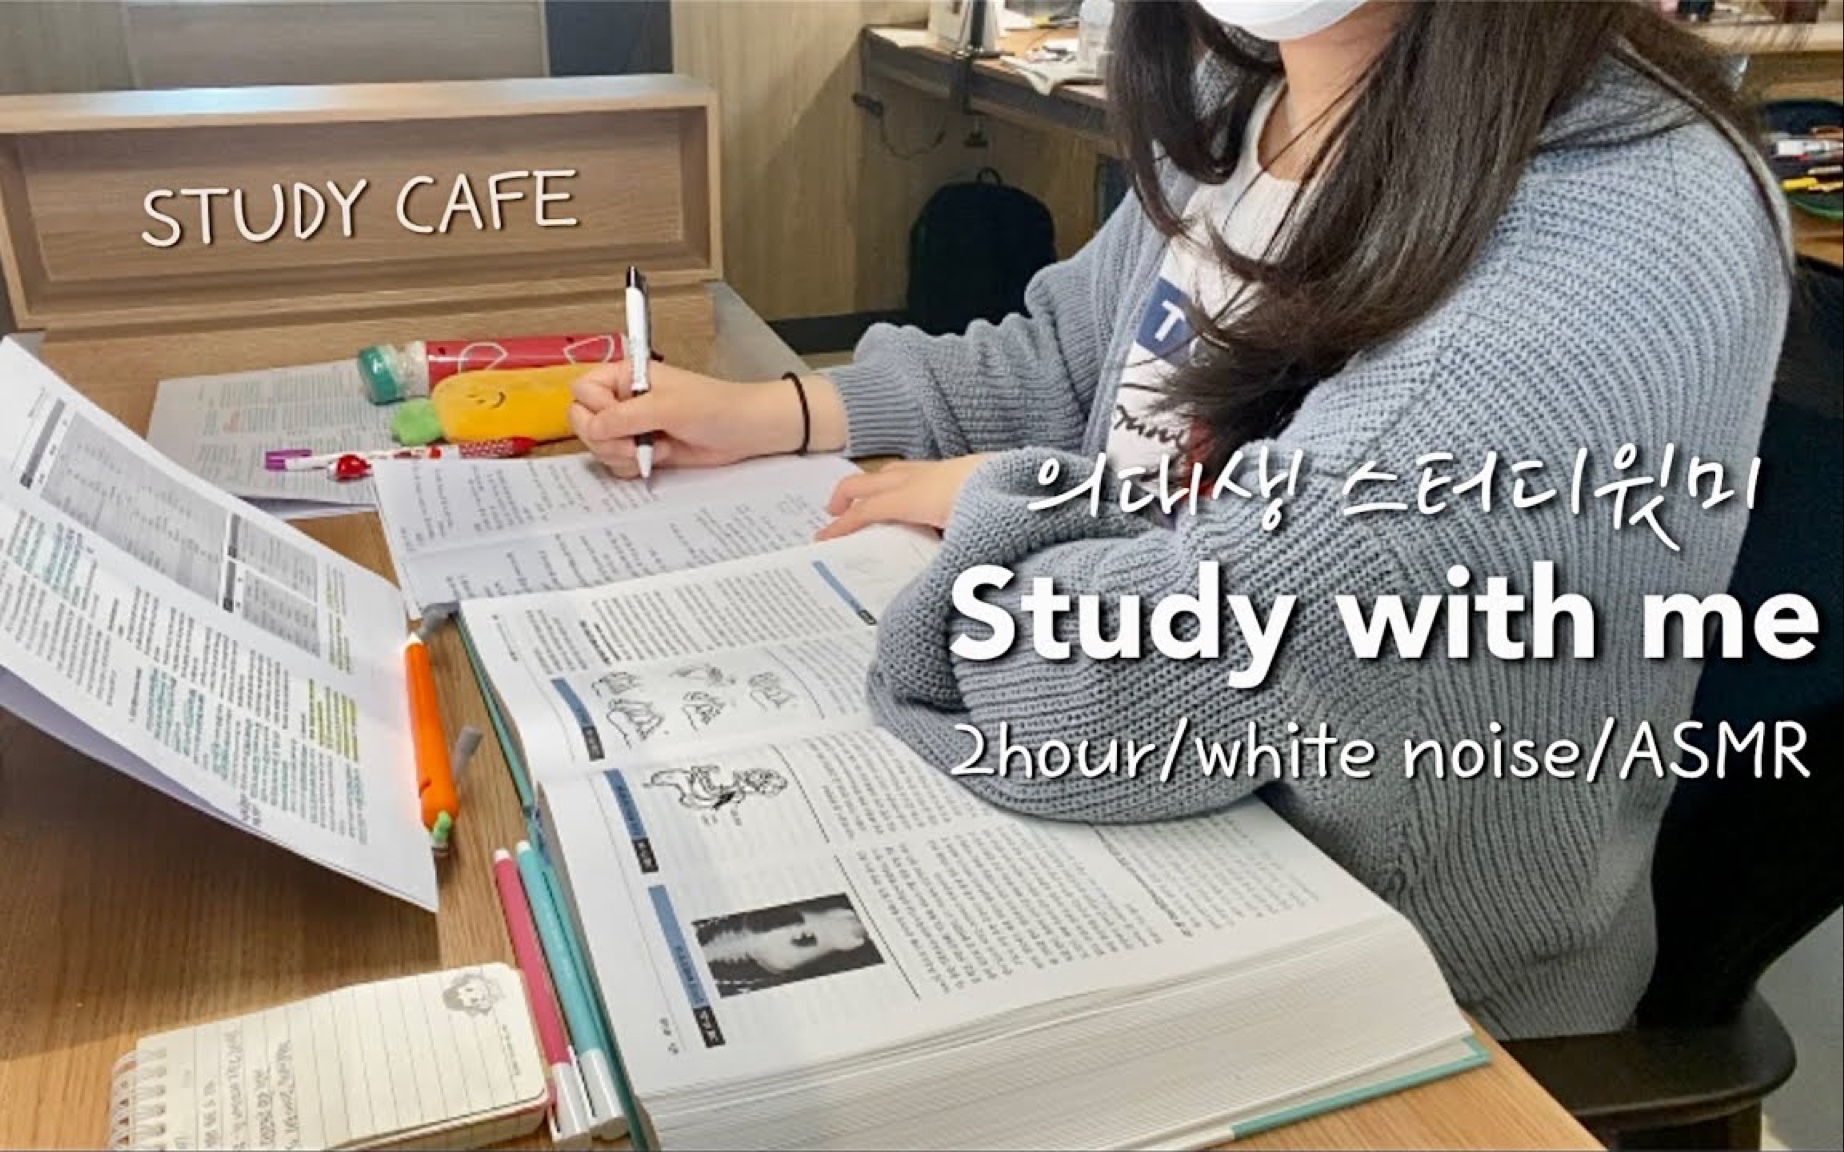 【study with me】2小时沉浸式学习 / 韩国咖啡店☕️/ 倒计时白噪音 / 陪伴学习 / 油管搬运 / 和韩国医大生小姐姐一起学习吧